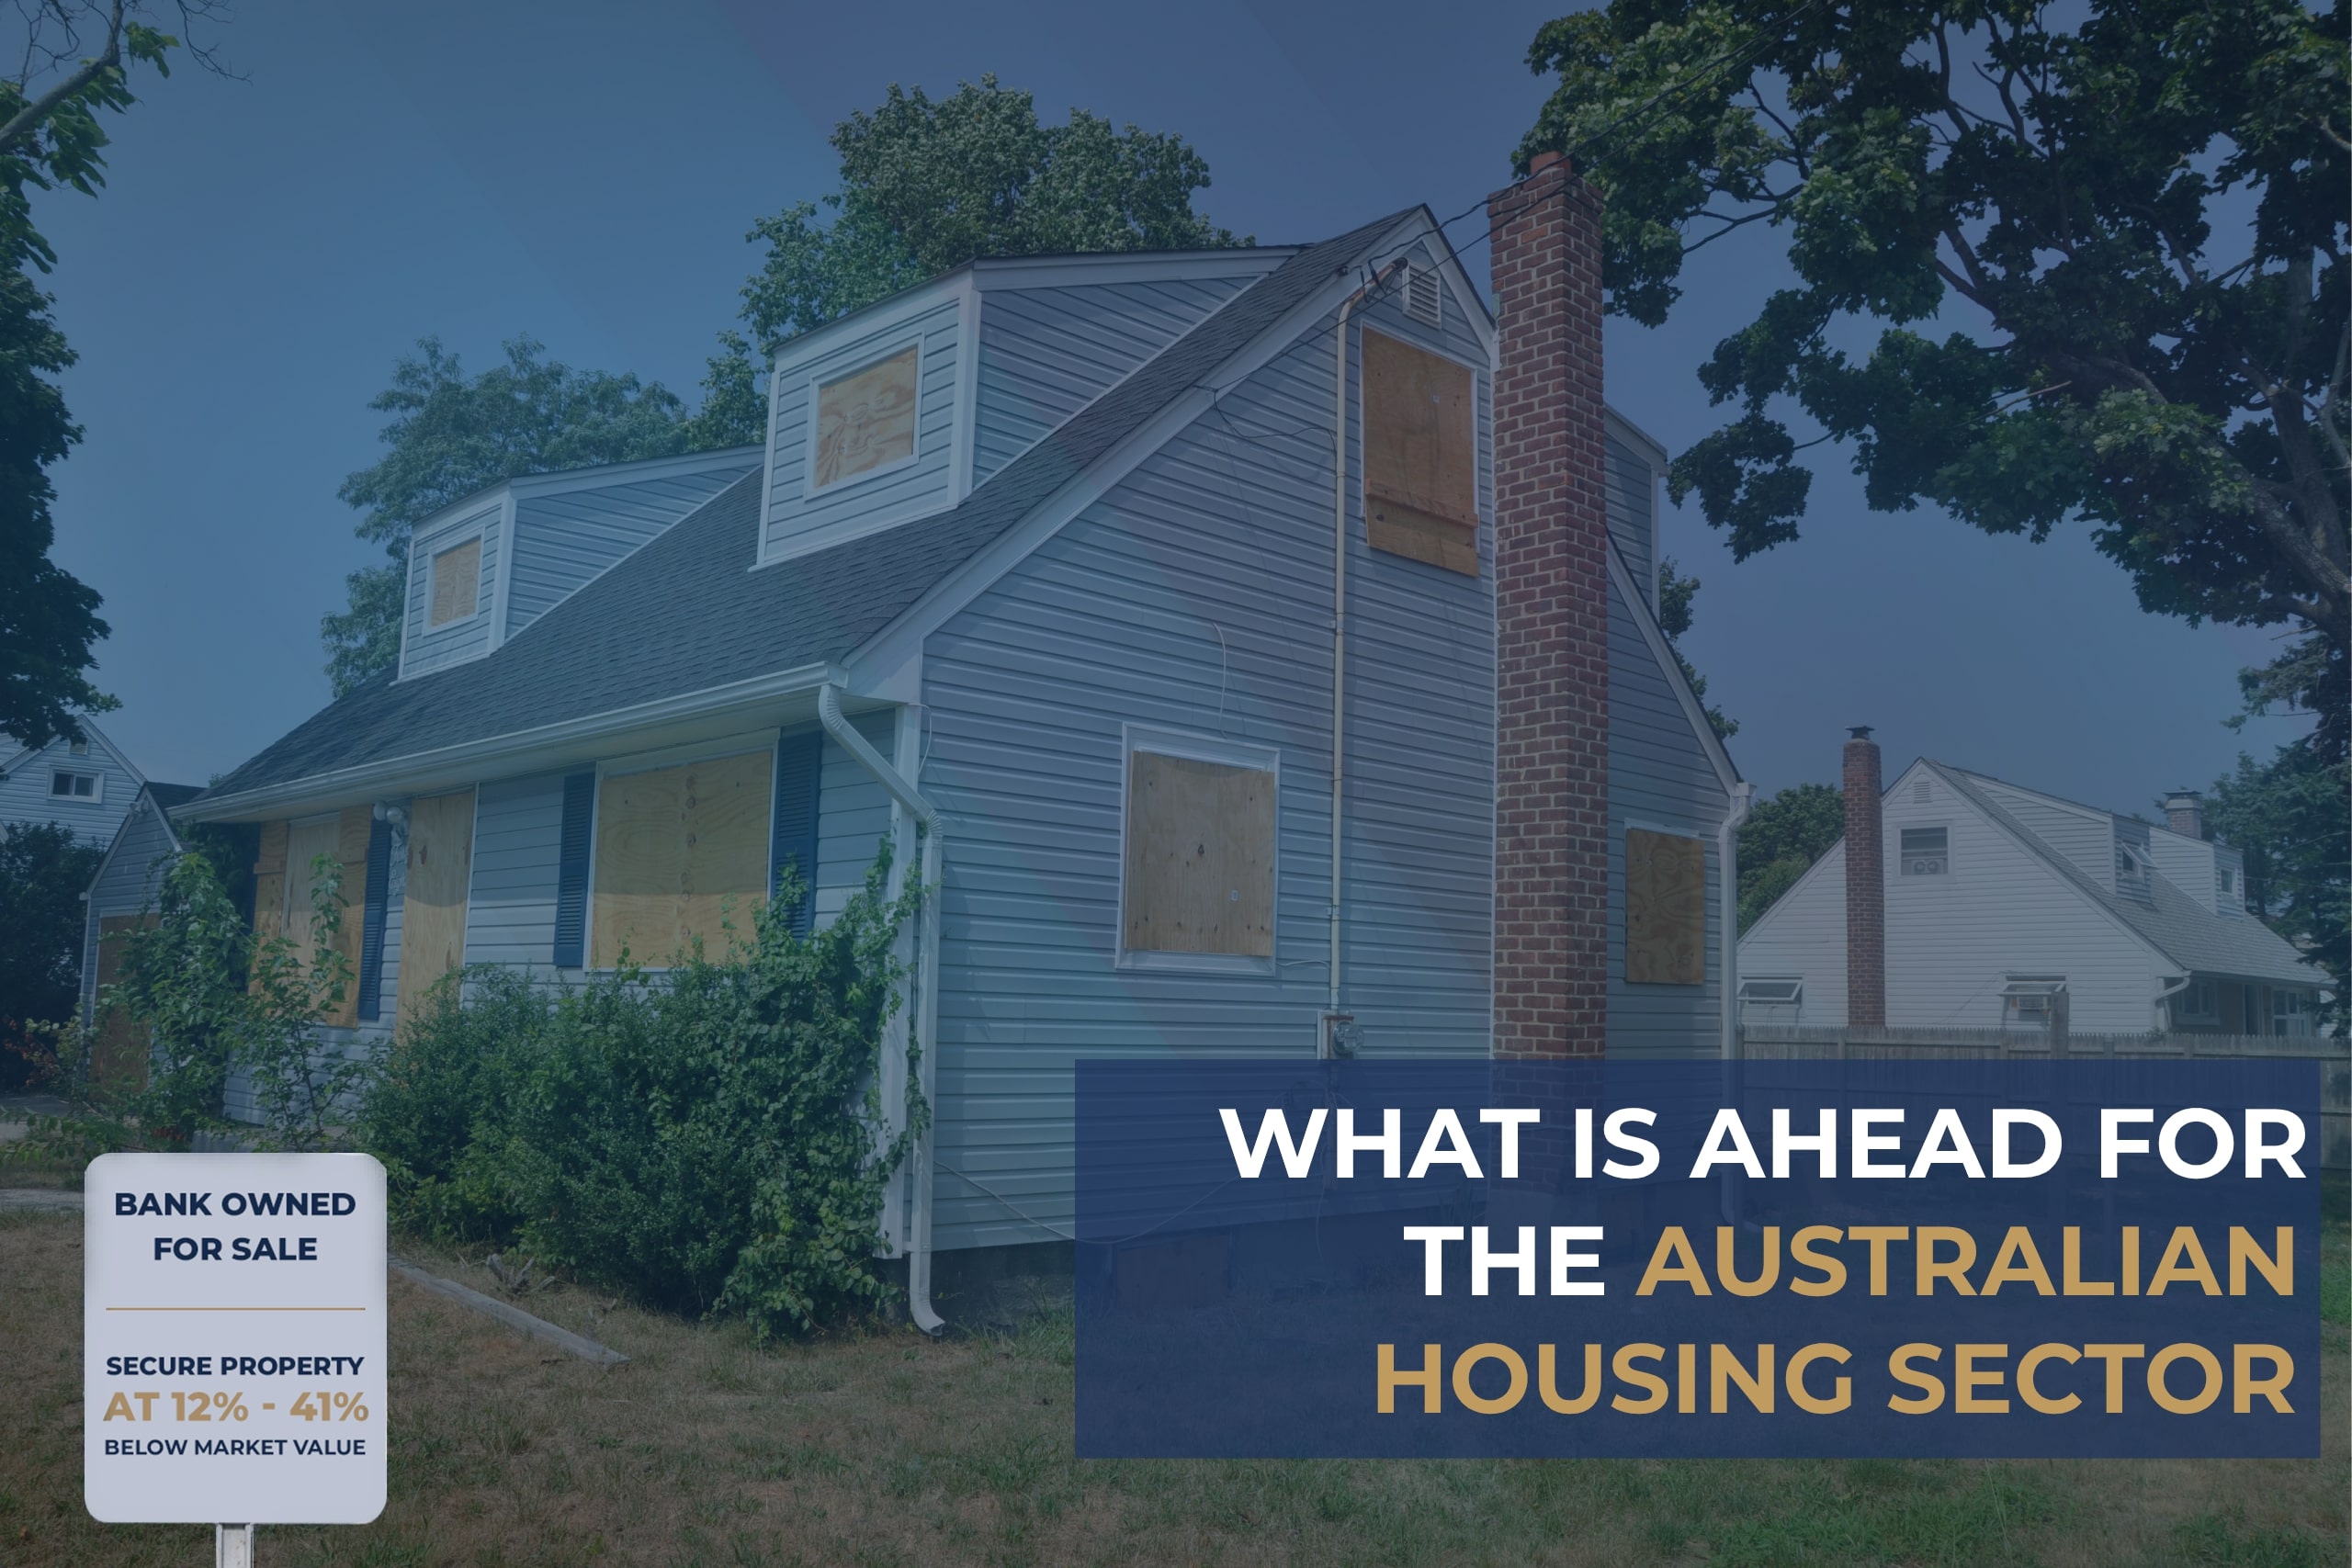 Australian Housing Sector